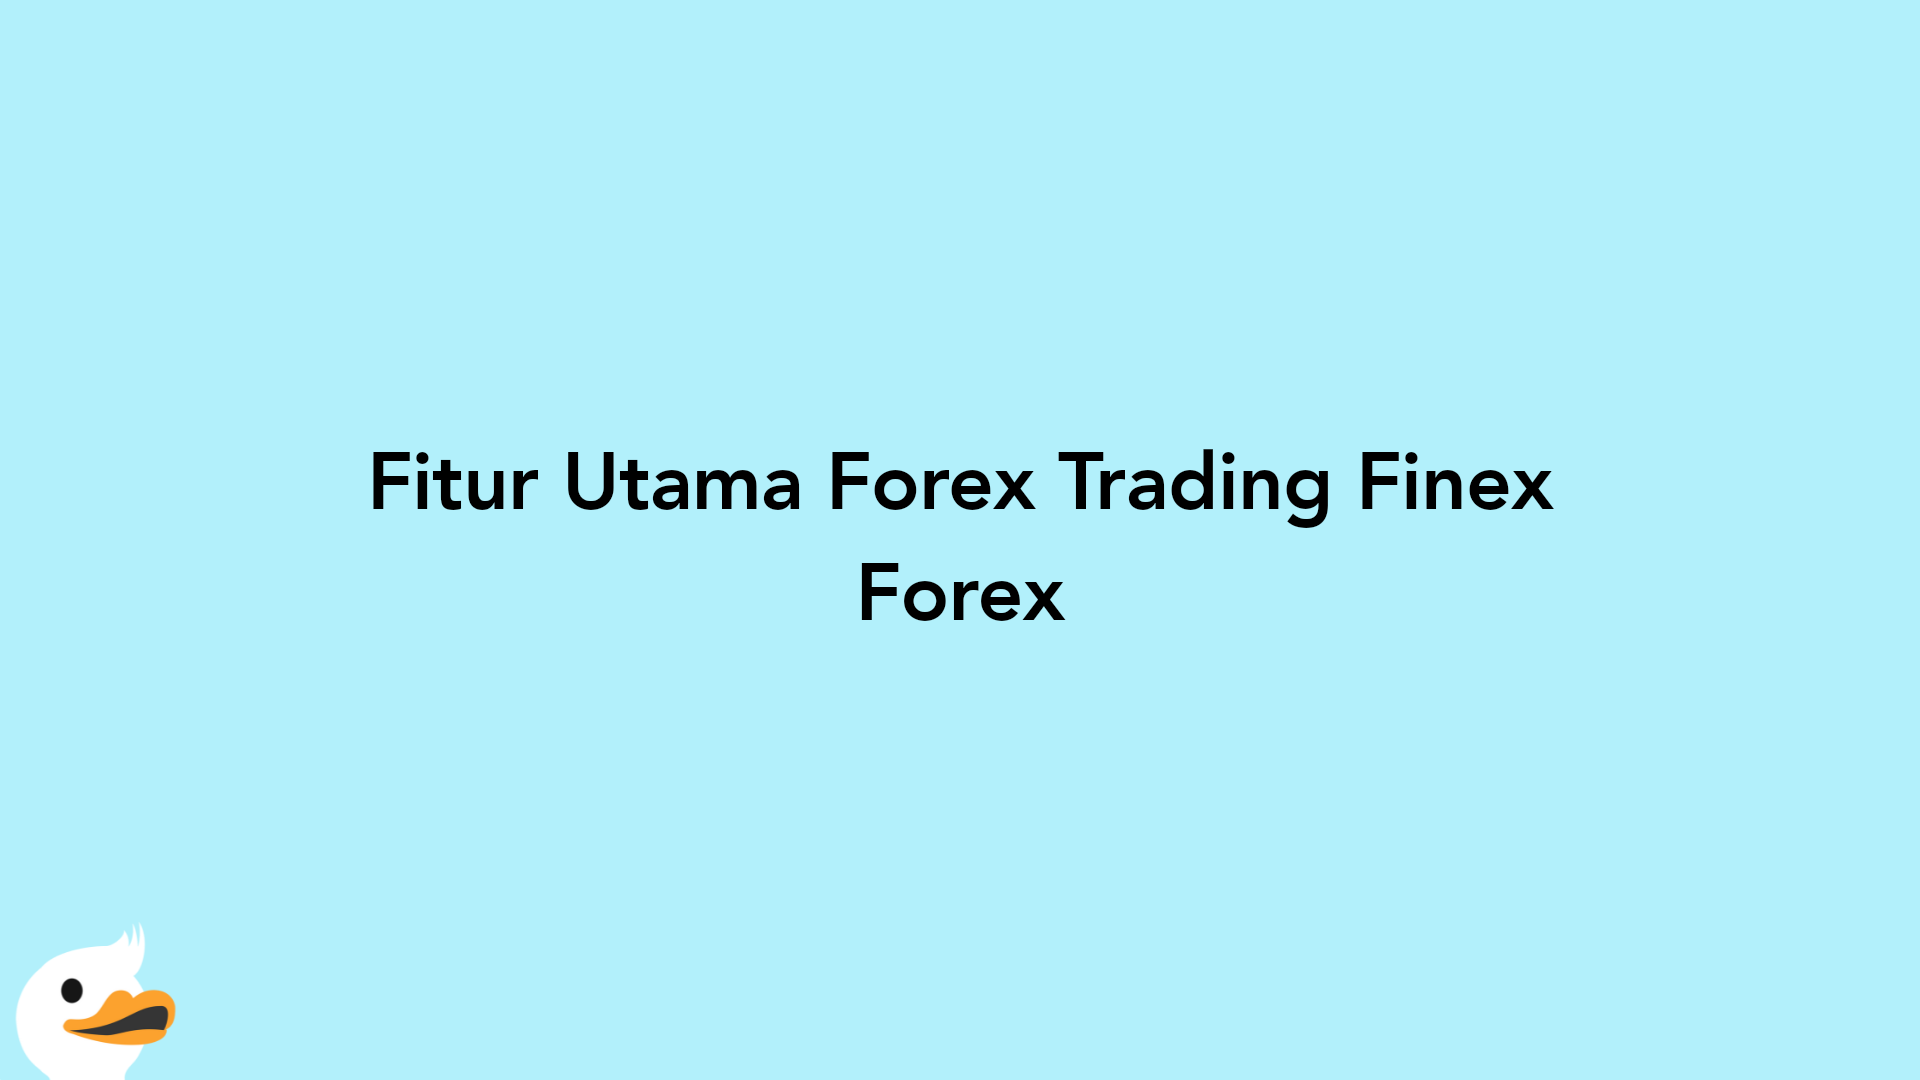 Fitur Utama Forex Trading Finex Forex